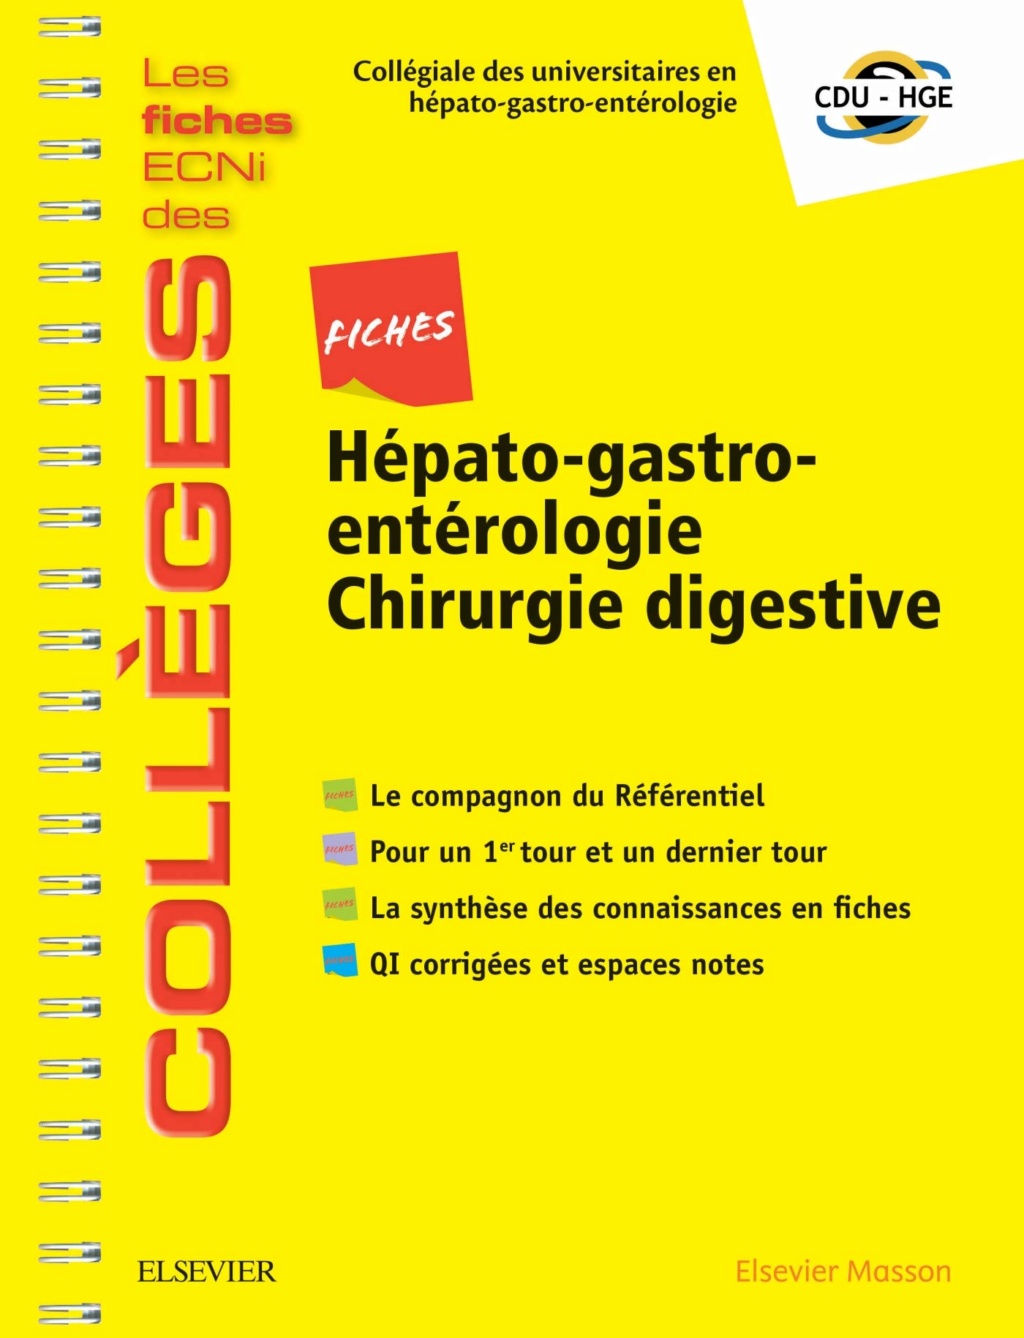 Livres Médicales - Fiches Hépato-gastro-entérologie Chirurgie digestive: Les fiches ECNi et QI des Collèges 2019 - Page 4 Fiches11